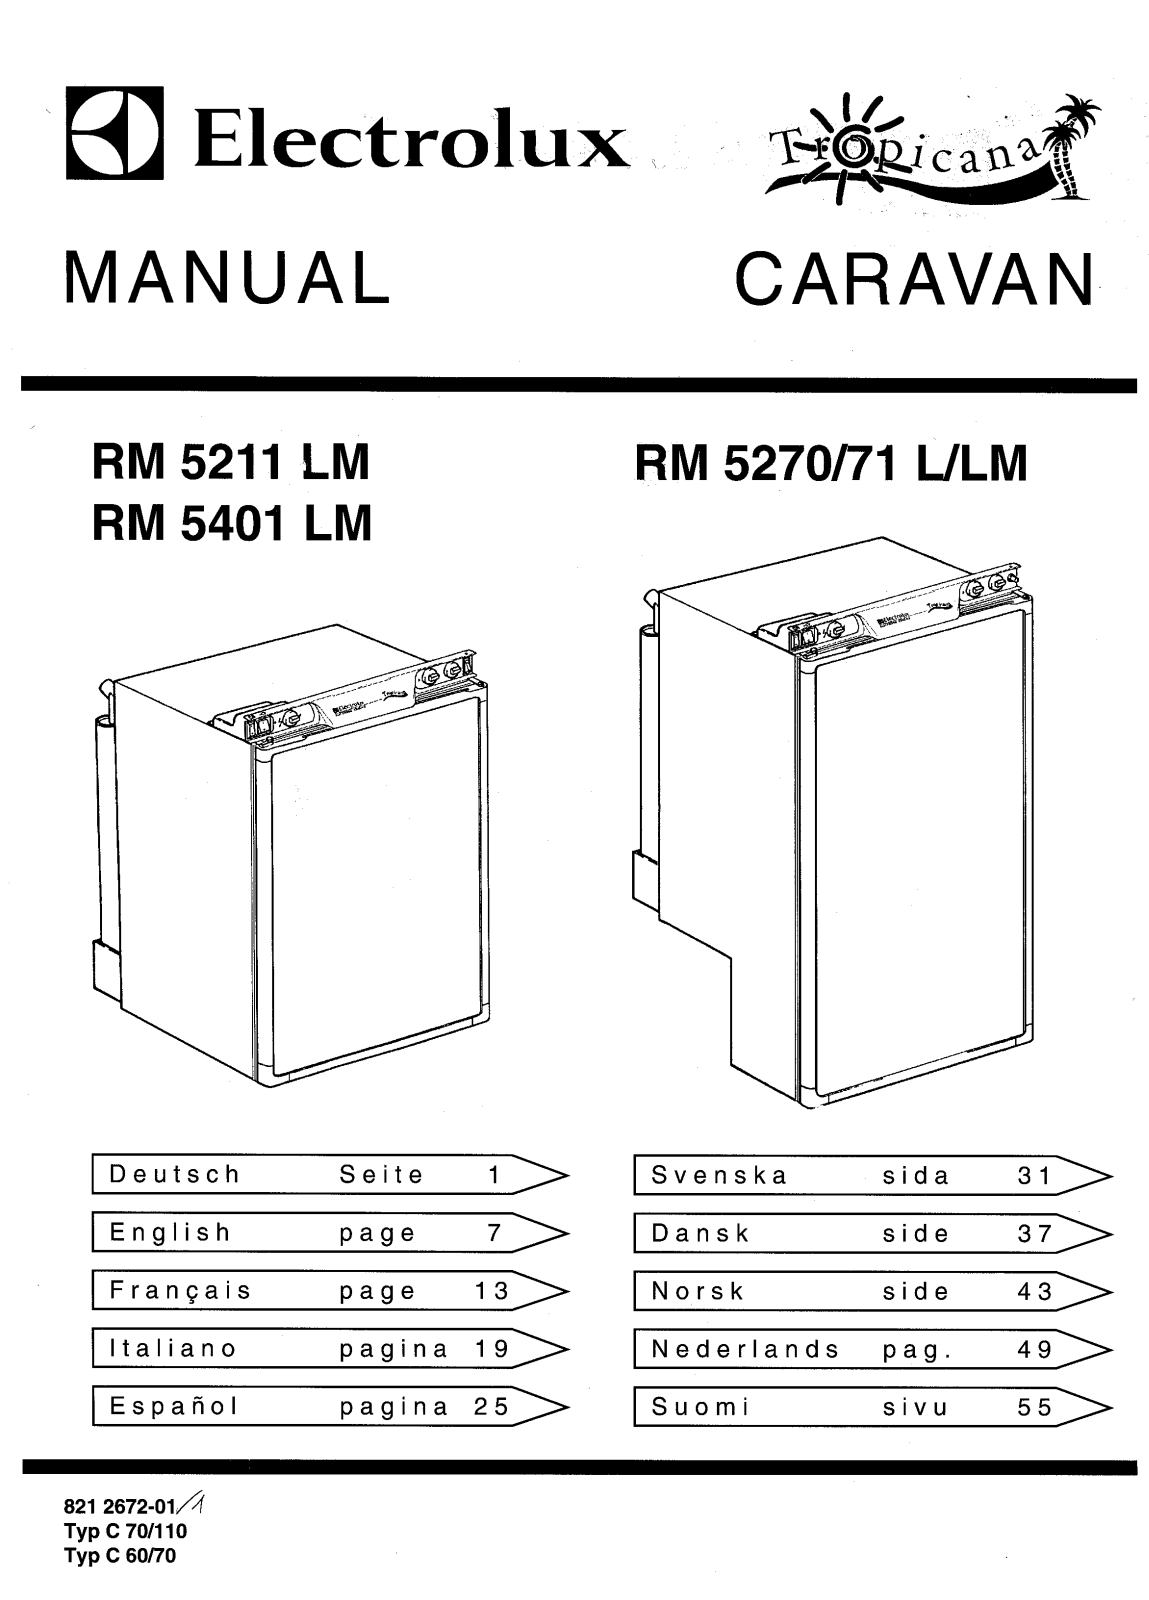 electrolux RM5405LM, RM5271LM, RM5211LM, RM4211LM, RM5401LM User Manual